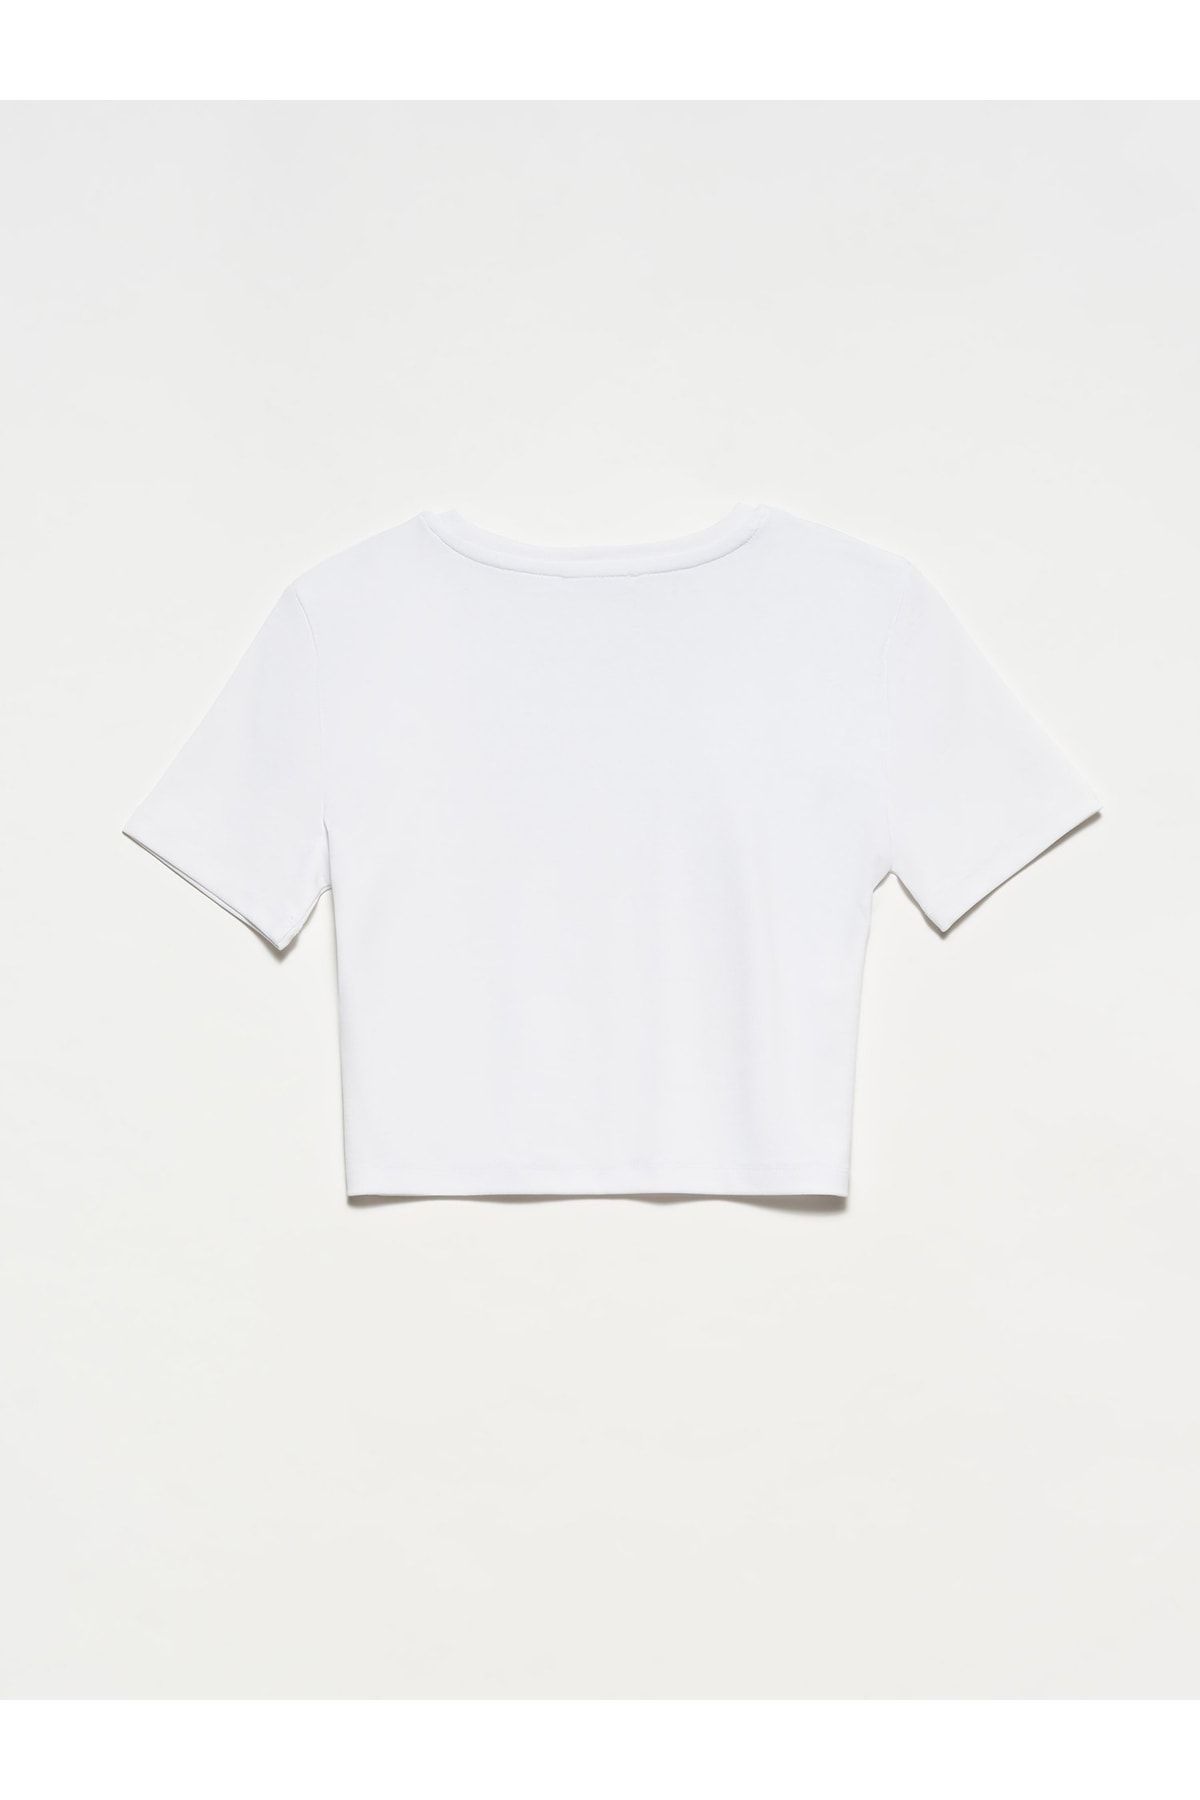 Dilvin 30124 Tshirt-سفید